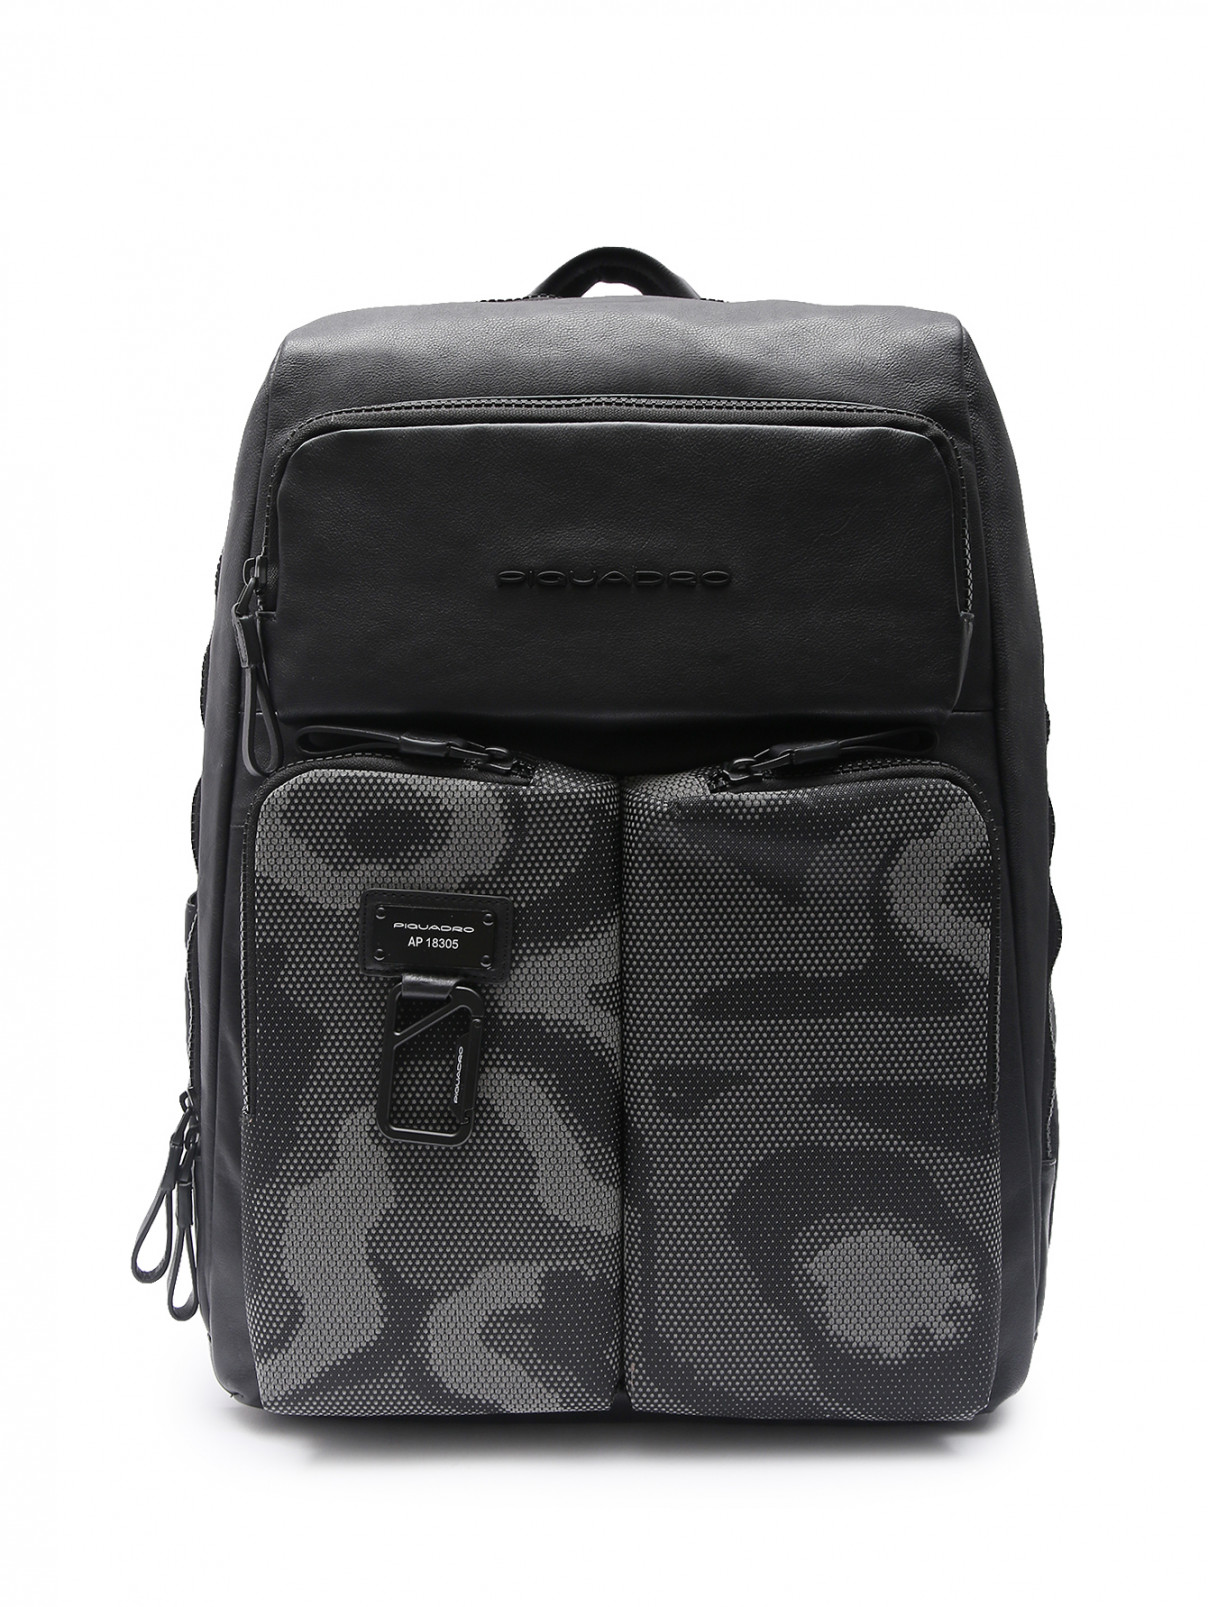 Комбинированный рюкзак из кожи и текстиля с узором Piquadro  –  Общий вид  – Цвет:  Черный